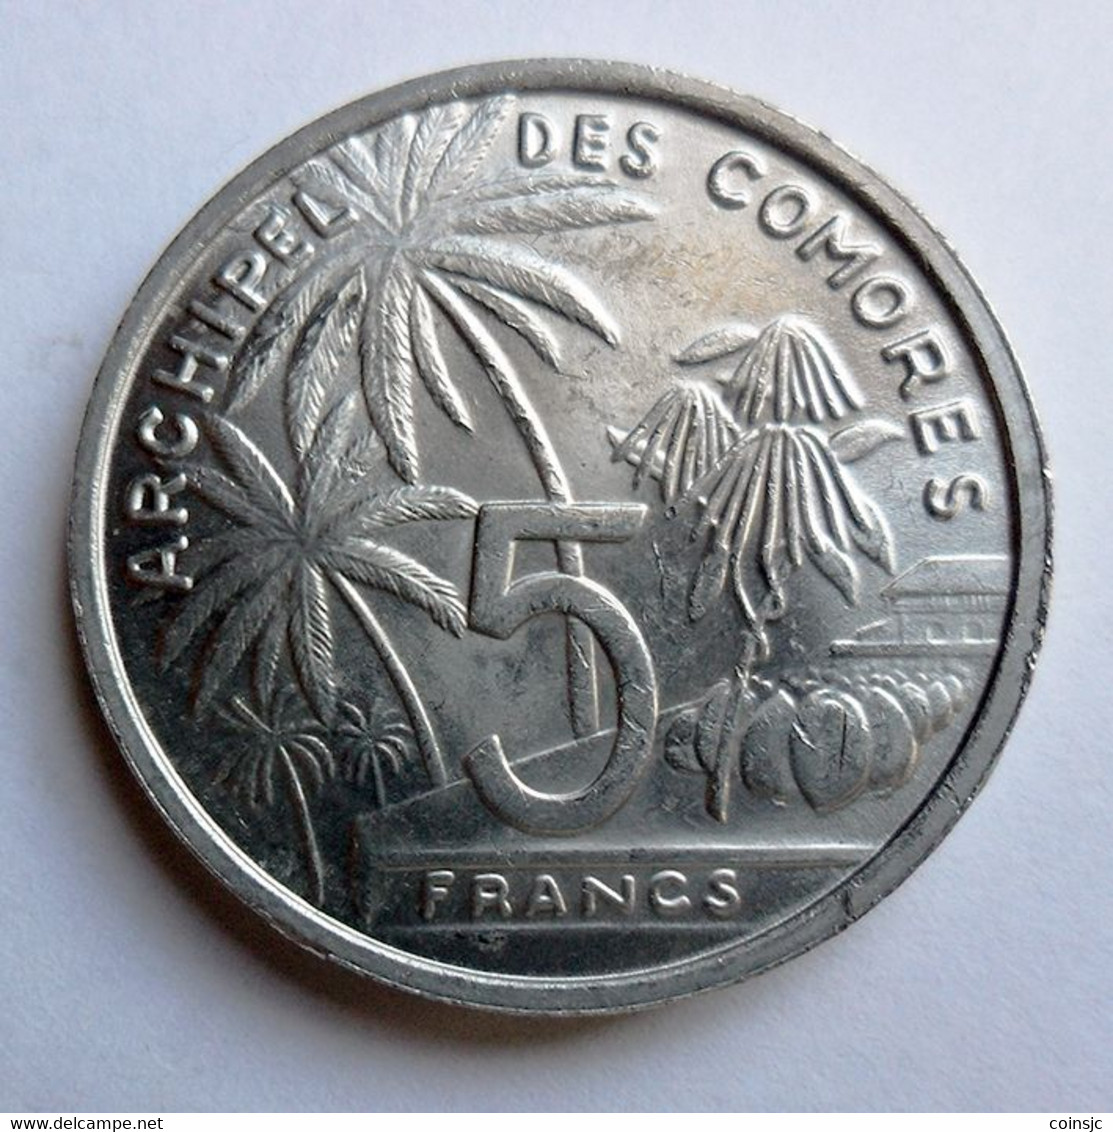 COMORES  -  5 FRANCS - 1964 - Comoros